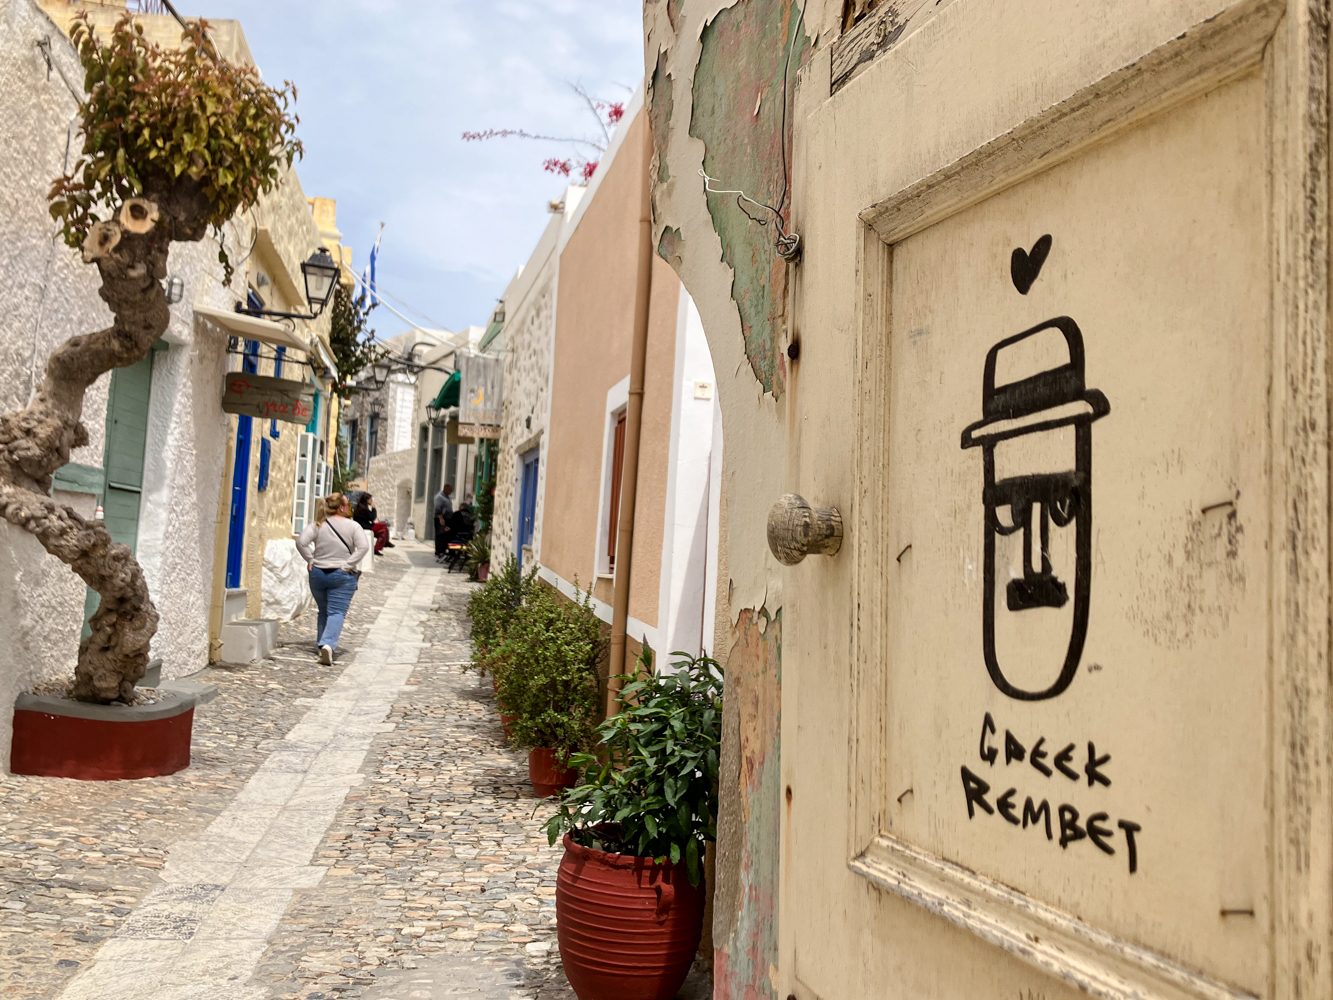 Dans les ruelles d’Ano Syros, les références au rebétiko sont nombreuses © Globe Reporters